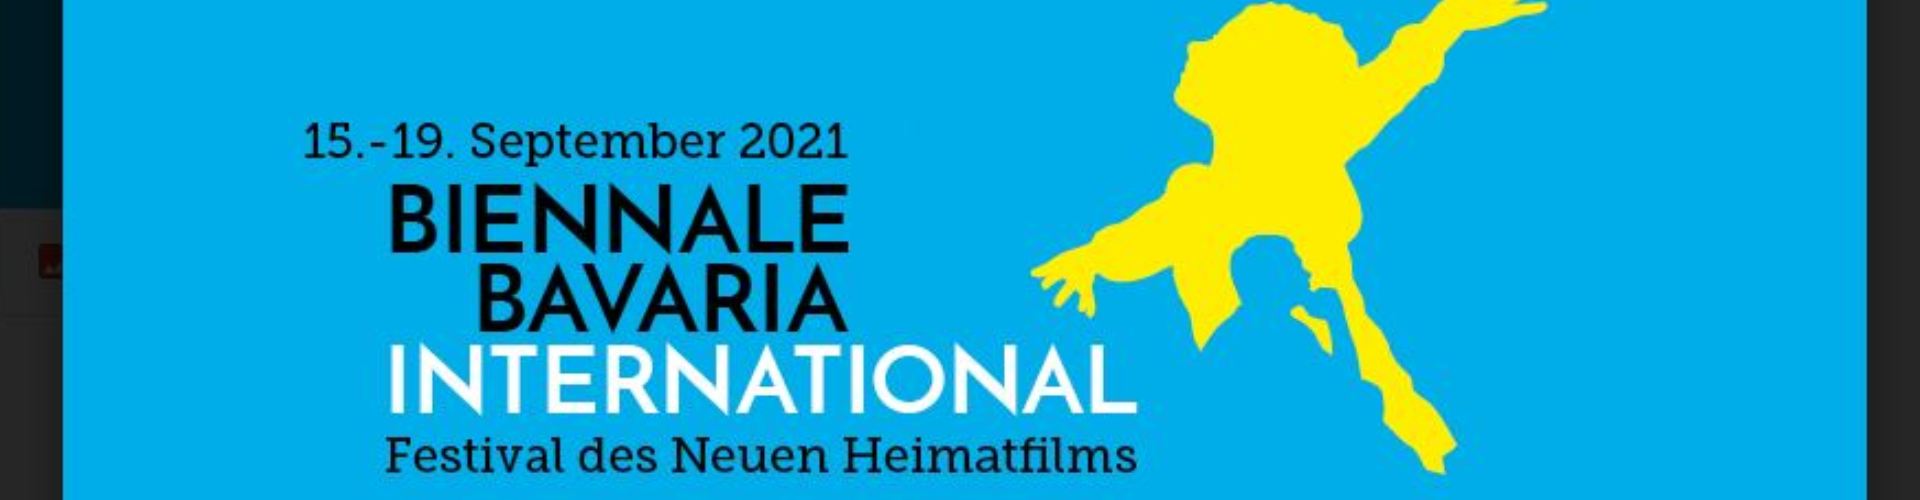 Biennale-Bavaria-International-Header-Webseite